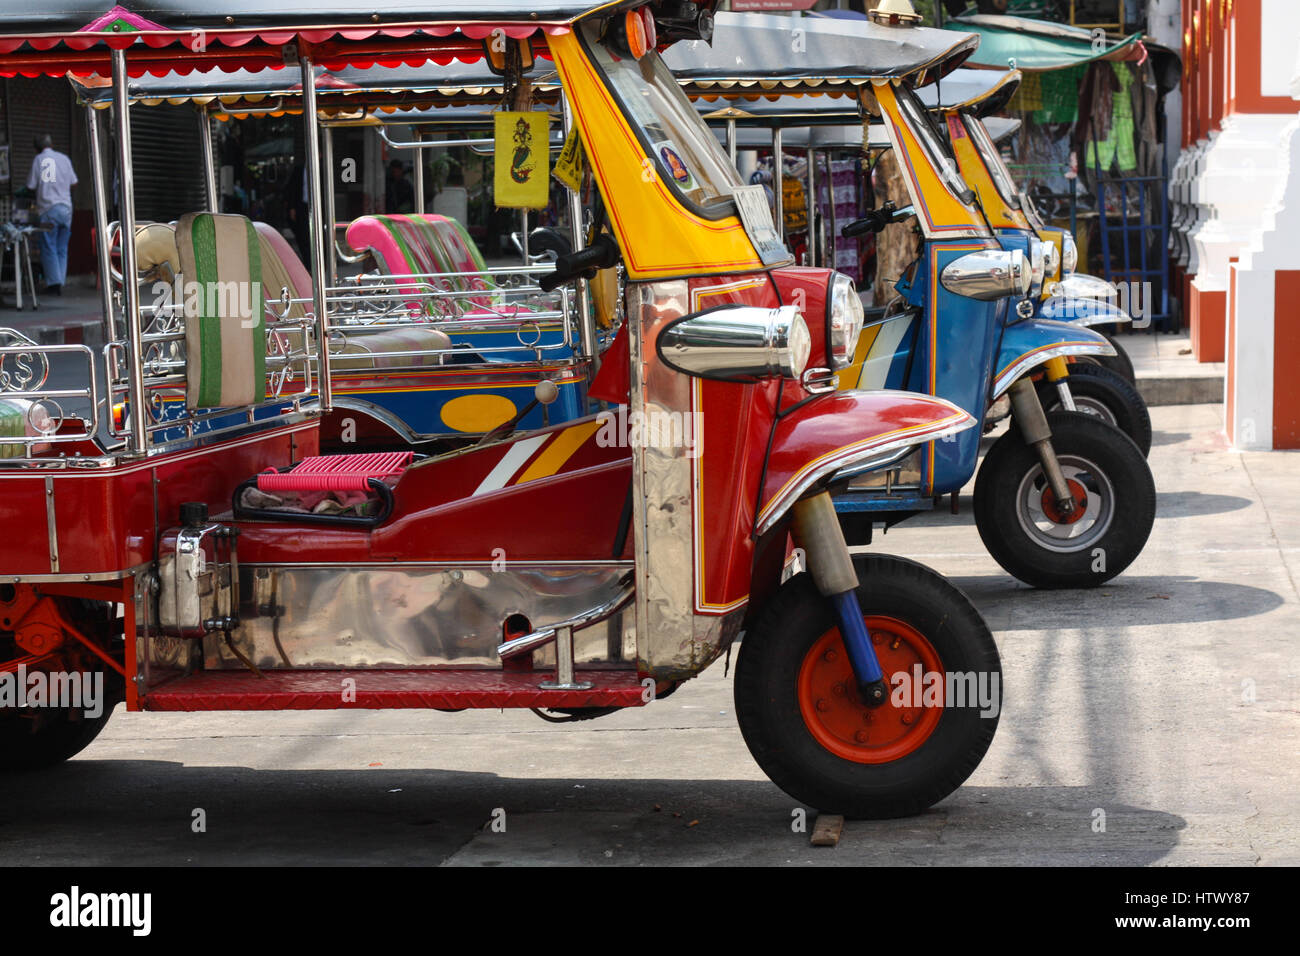 Drei Rädern Taxi, Tuk-Tuk oder Moto-Taxi in Bangkok genannt, geparkt in einer Straße von Bangkok, Thailand. Stockfoto